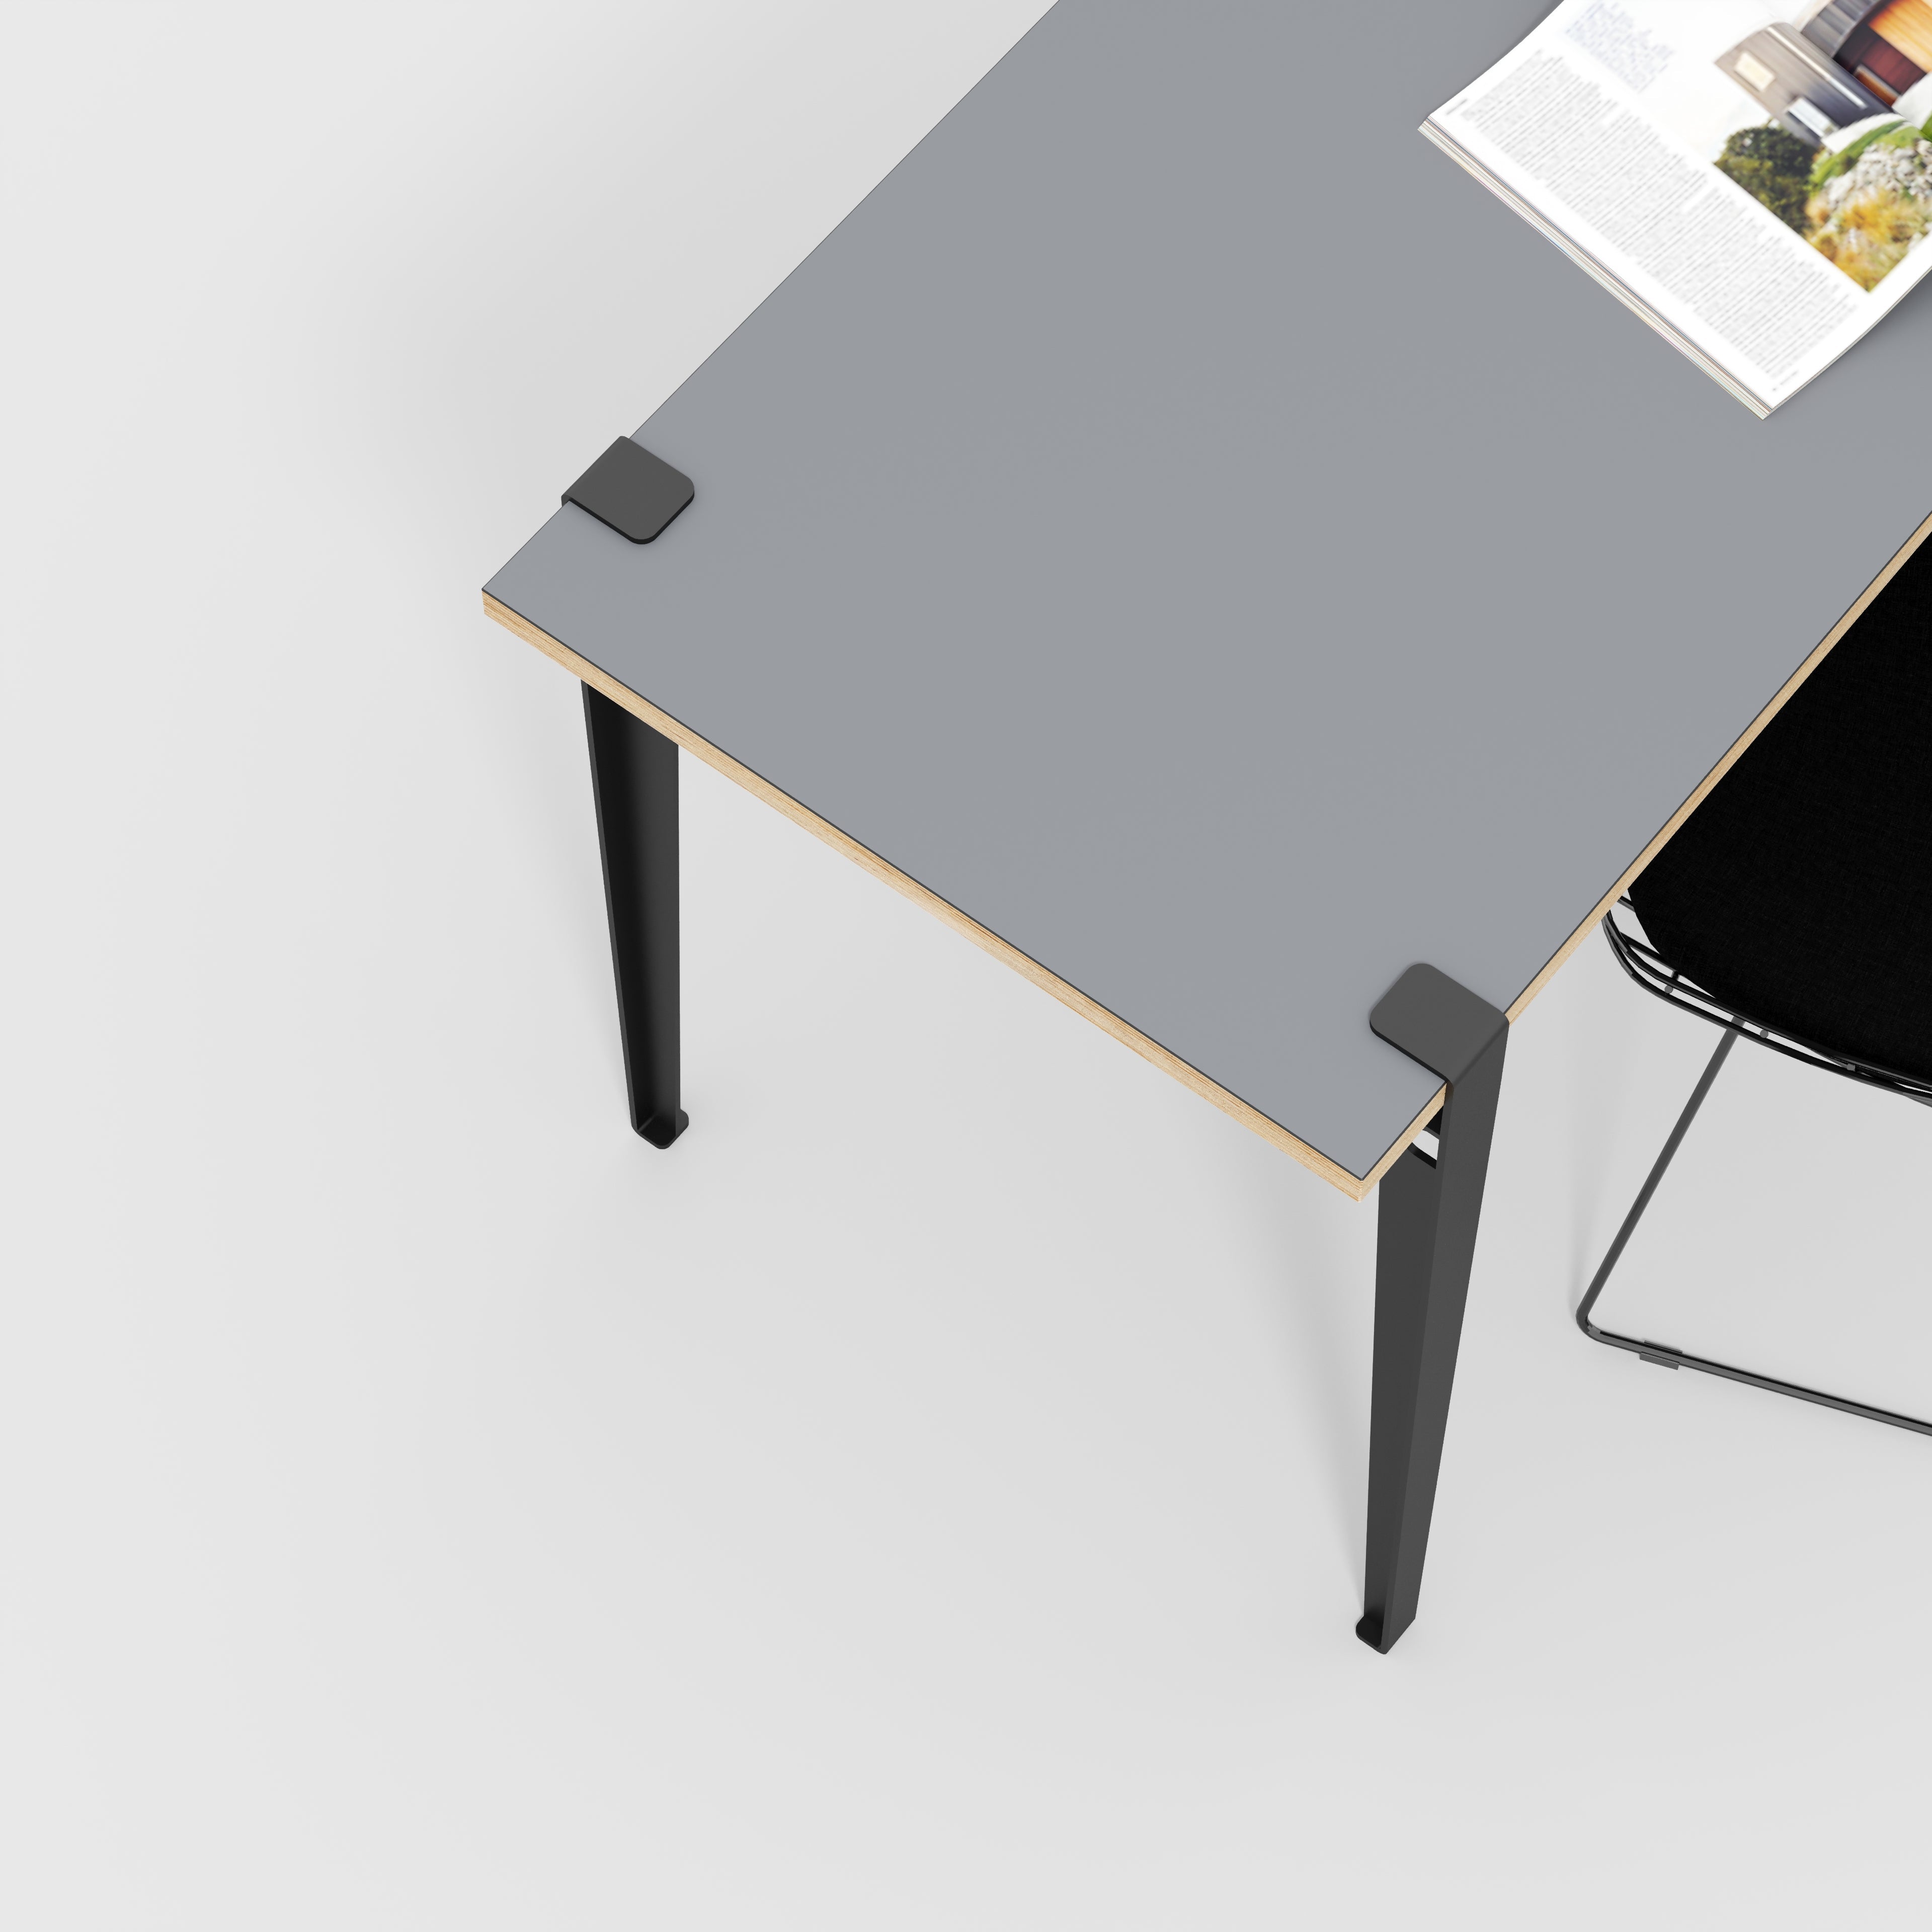 Desk with Black Tiptoe Legs - Formica Tornado Grey - 1200(w) x 600(d) x 750(h)